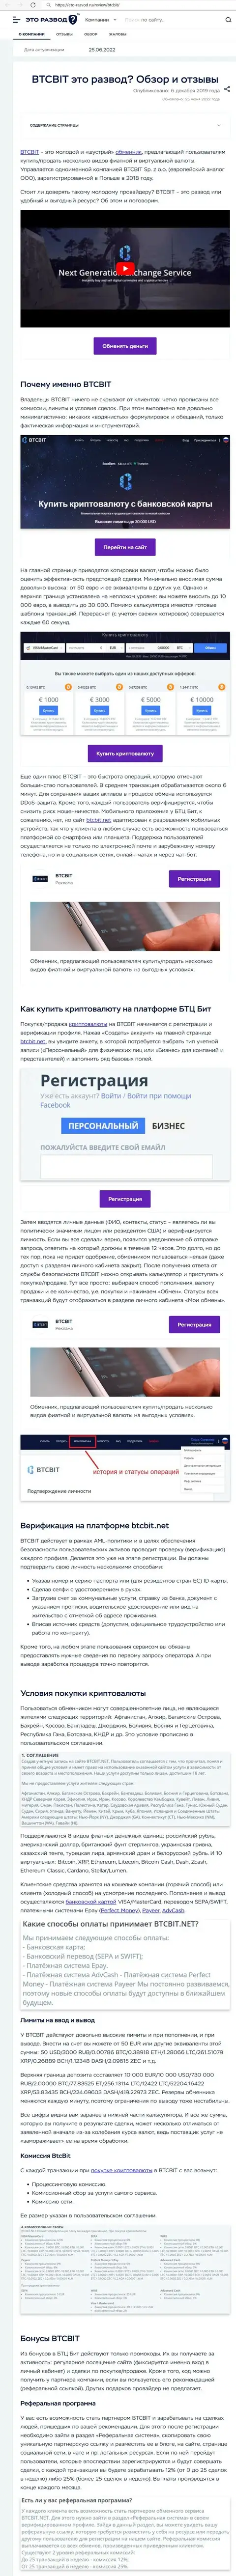 Обзор и условия для предоставления услуг компании БТЦБит в информационном материале на сайте eto razvod ru